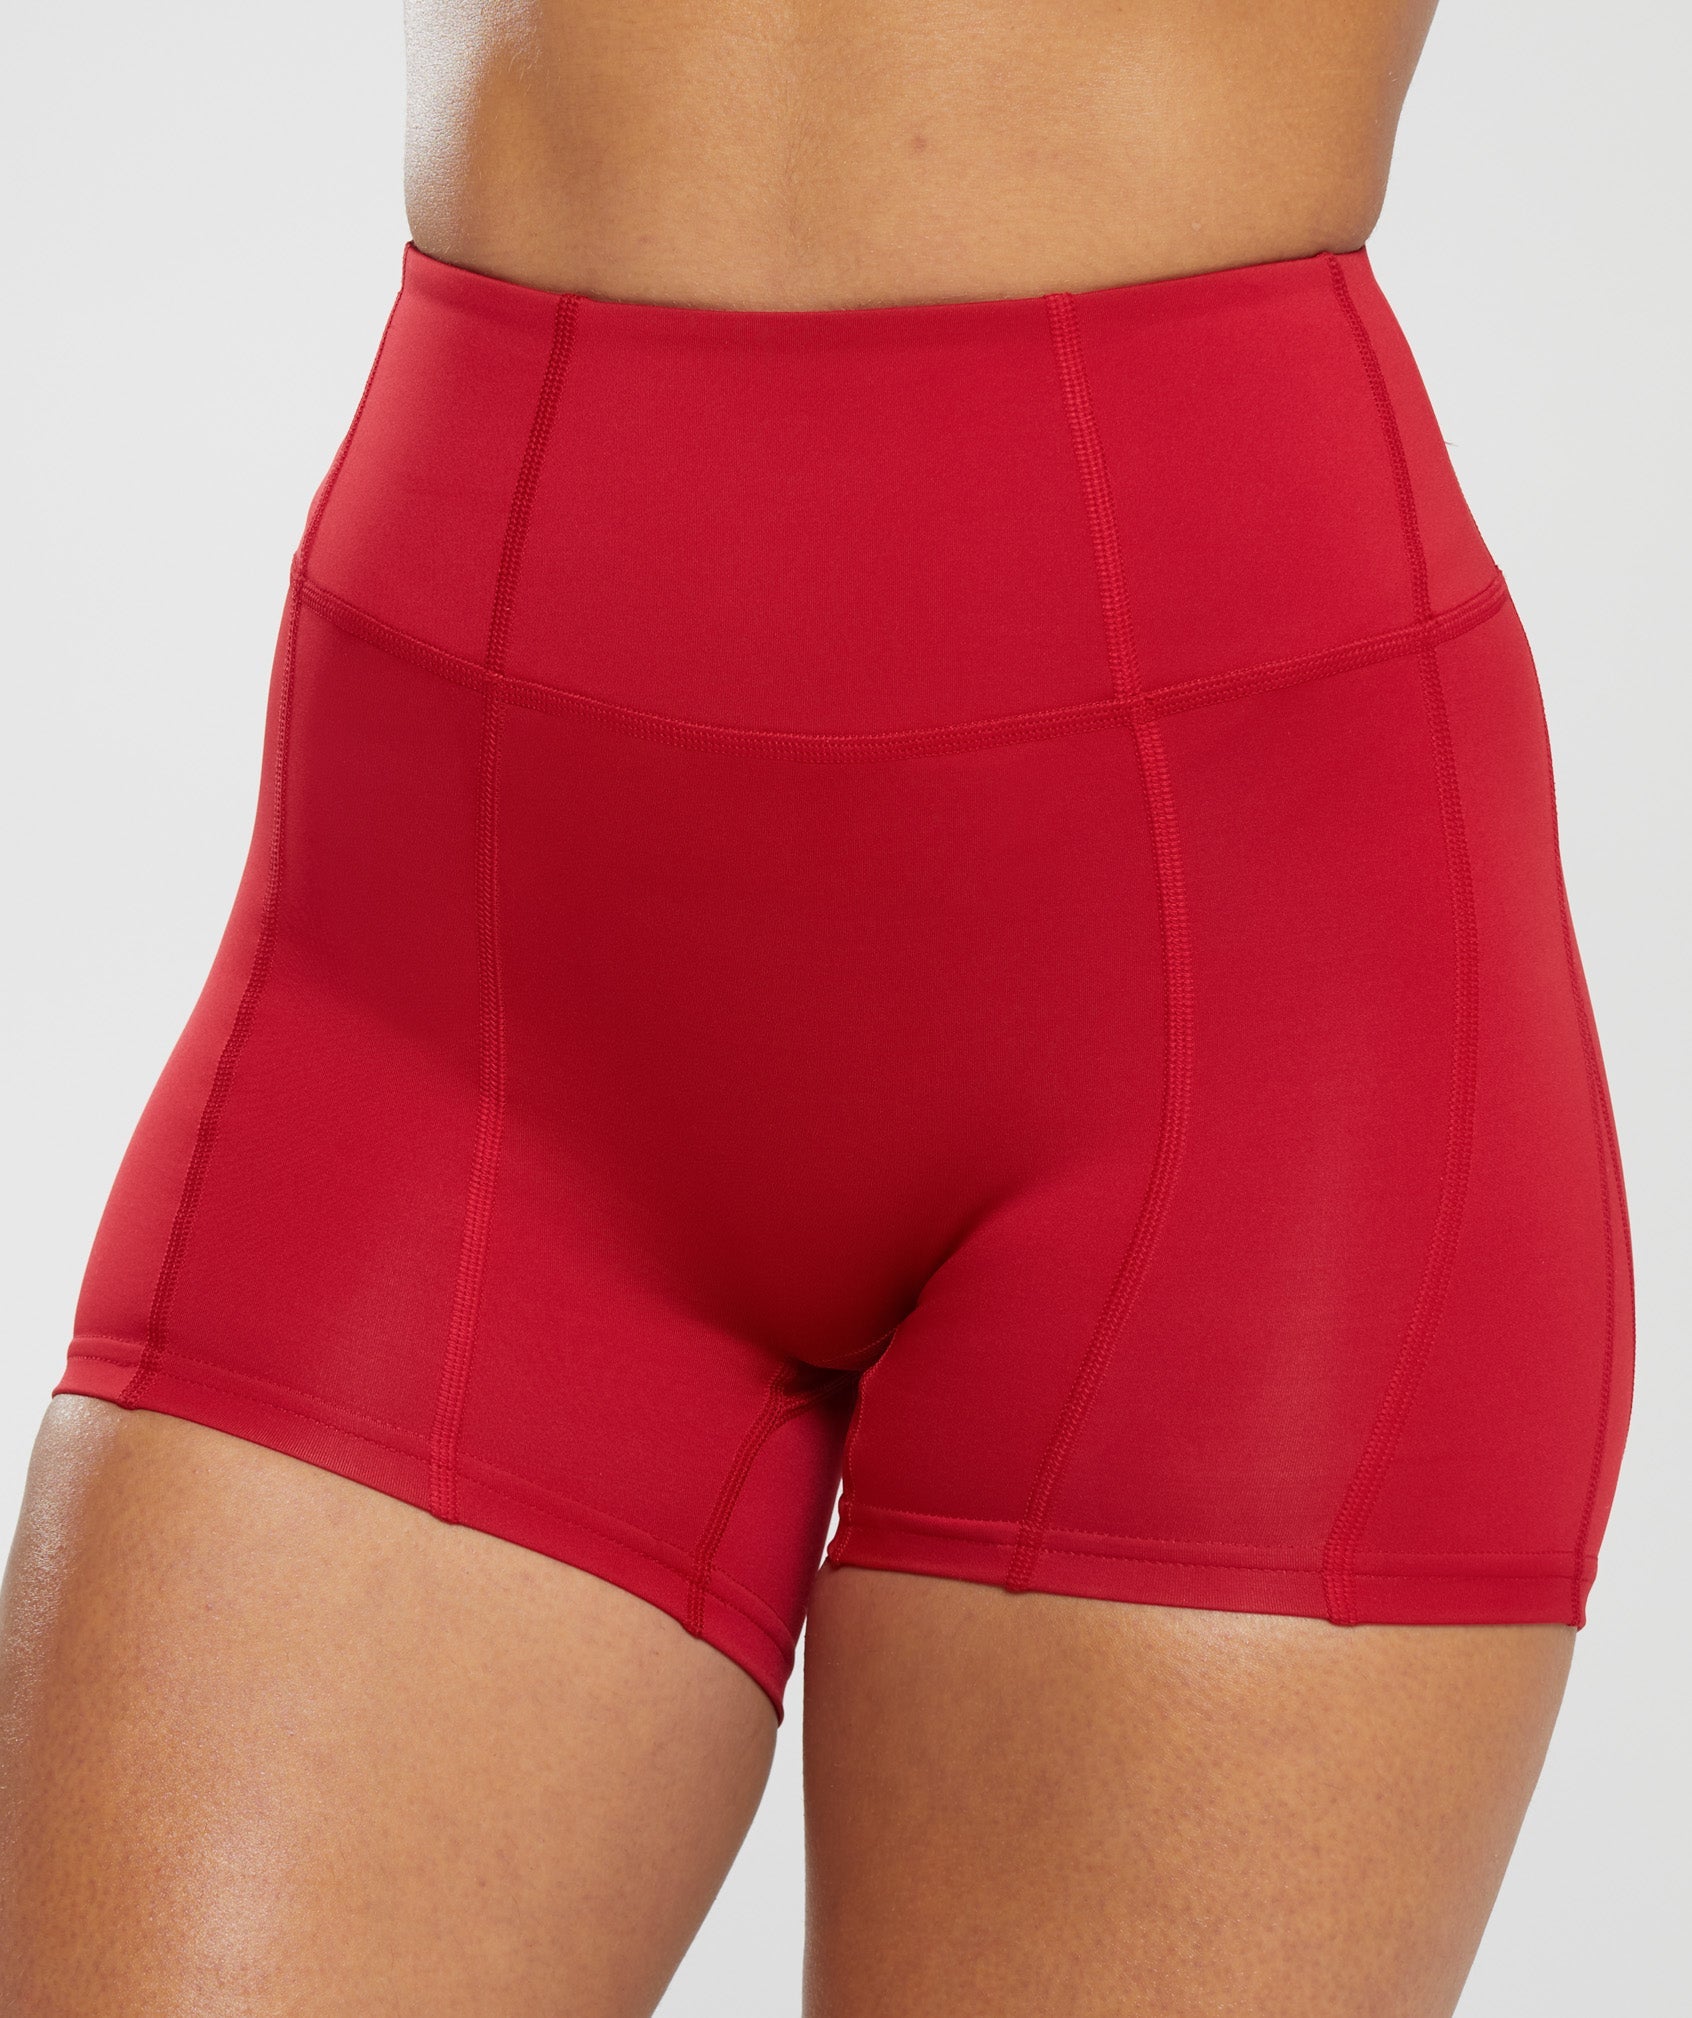 Gymshark womens power shorts - Gem